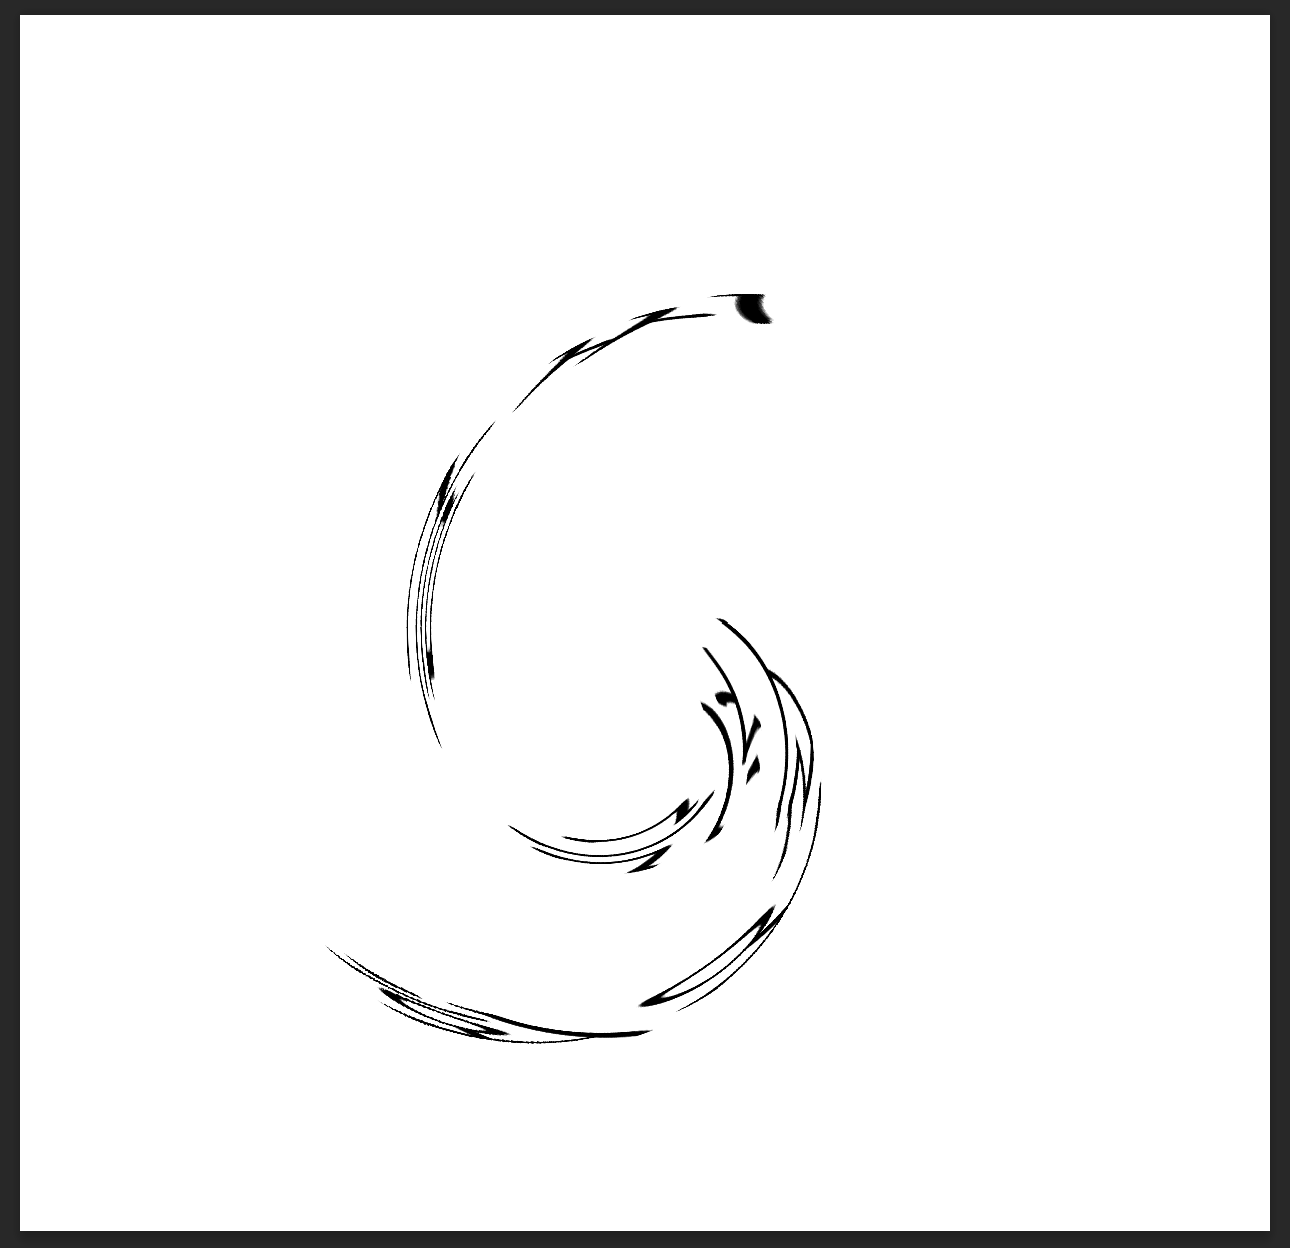 [그림 16] Twirl(돌리기)